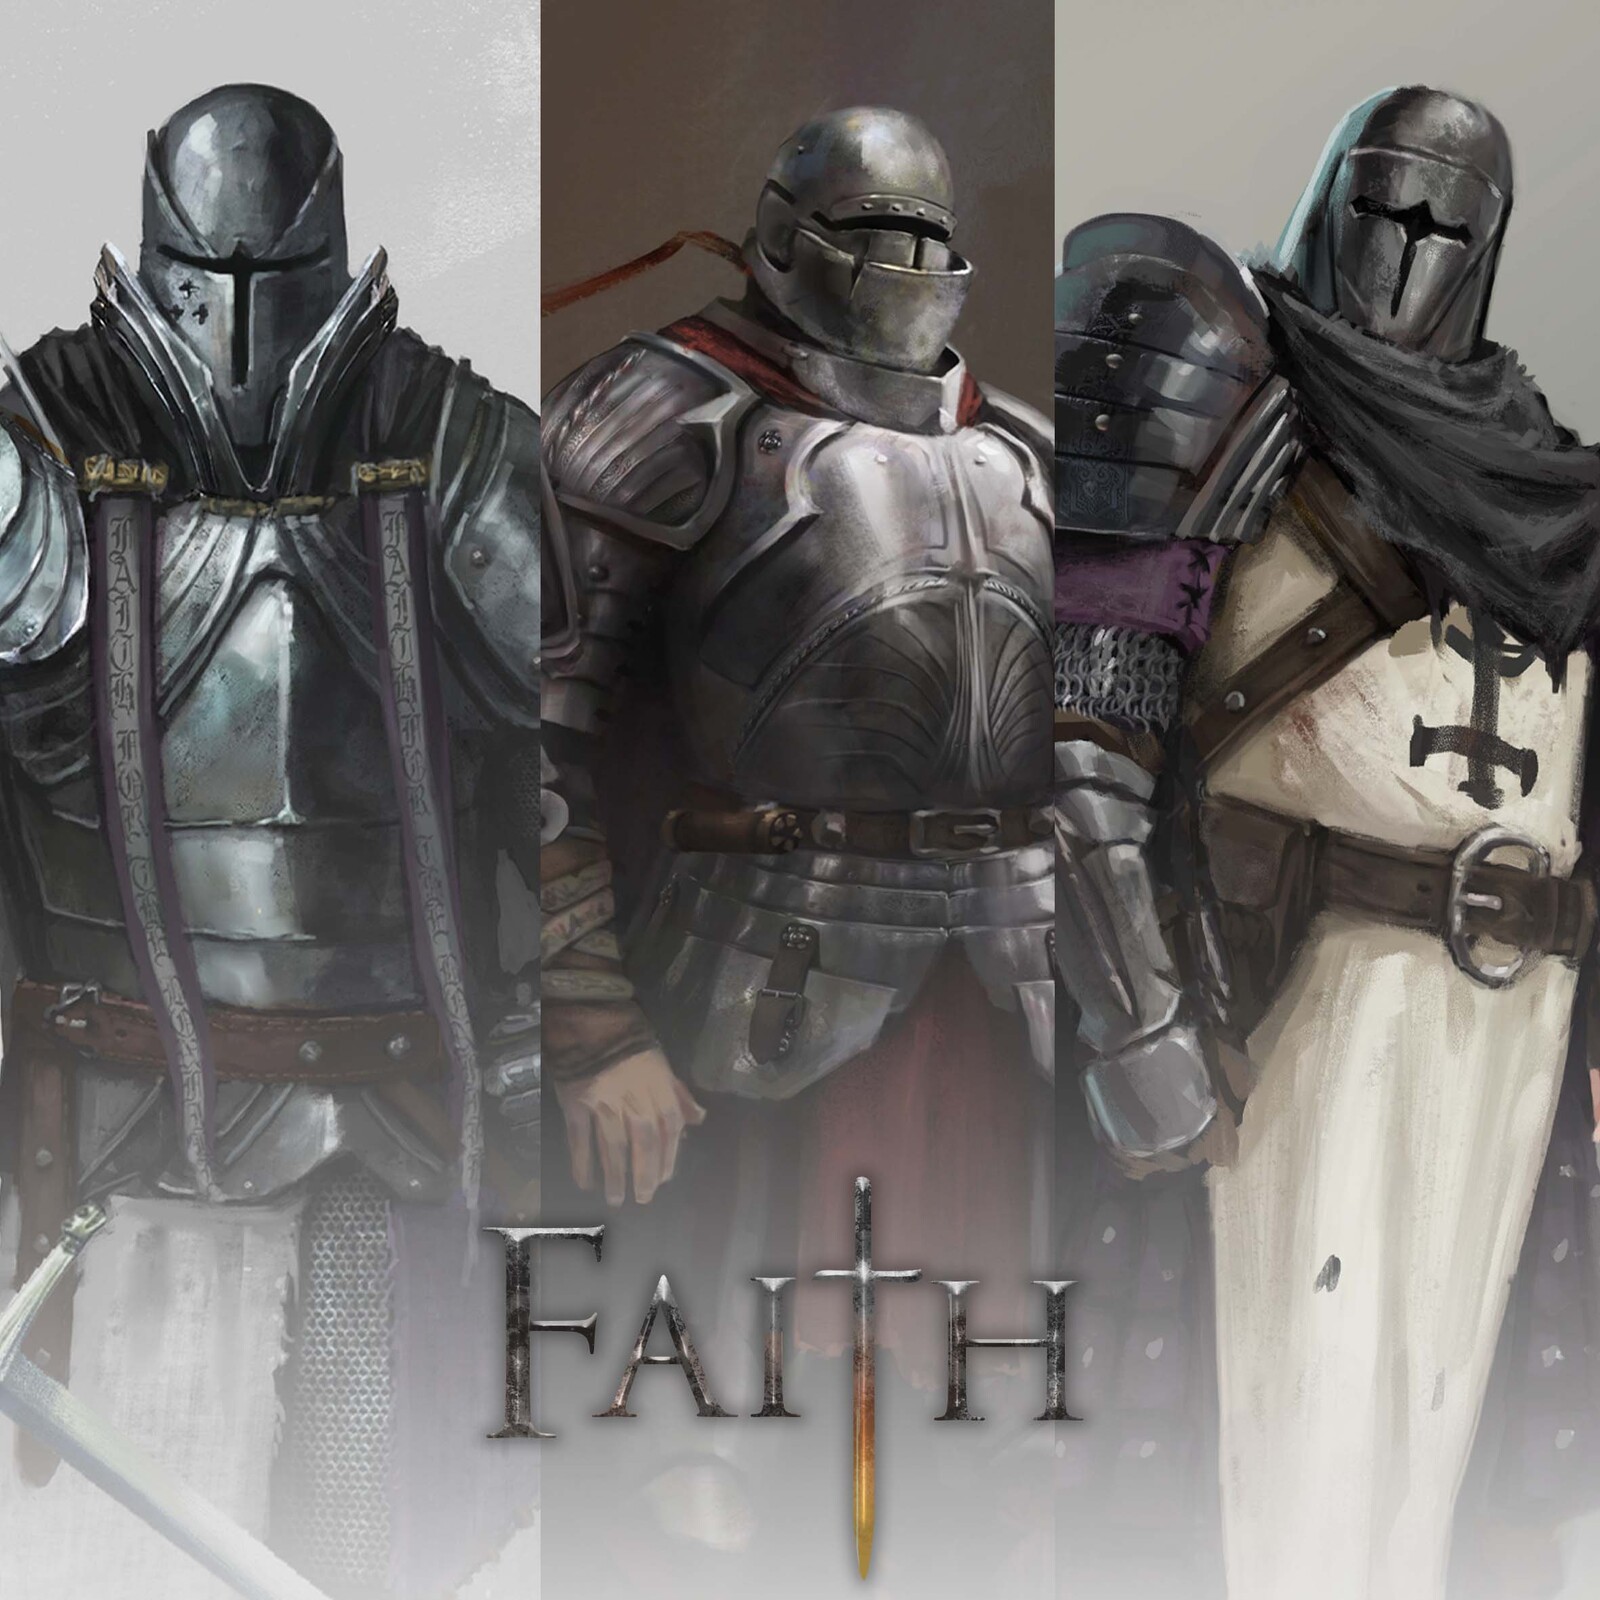 Faith knights